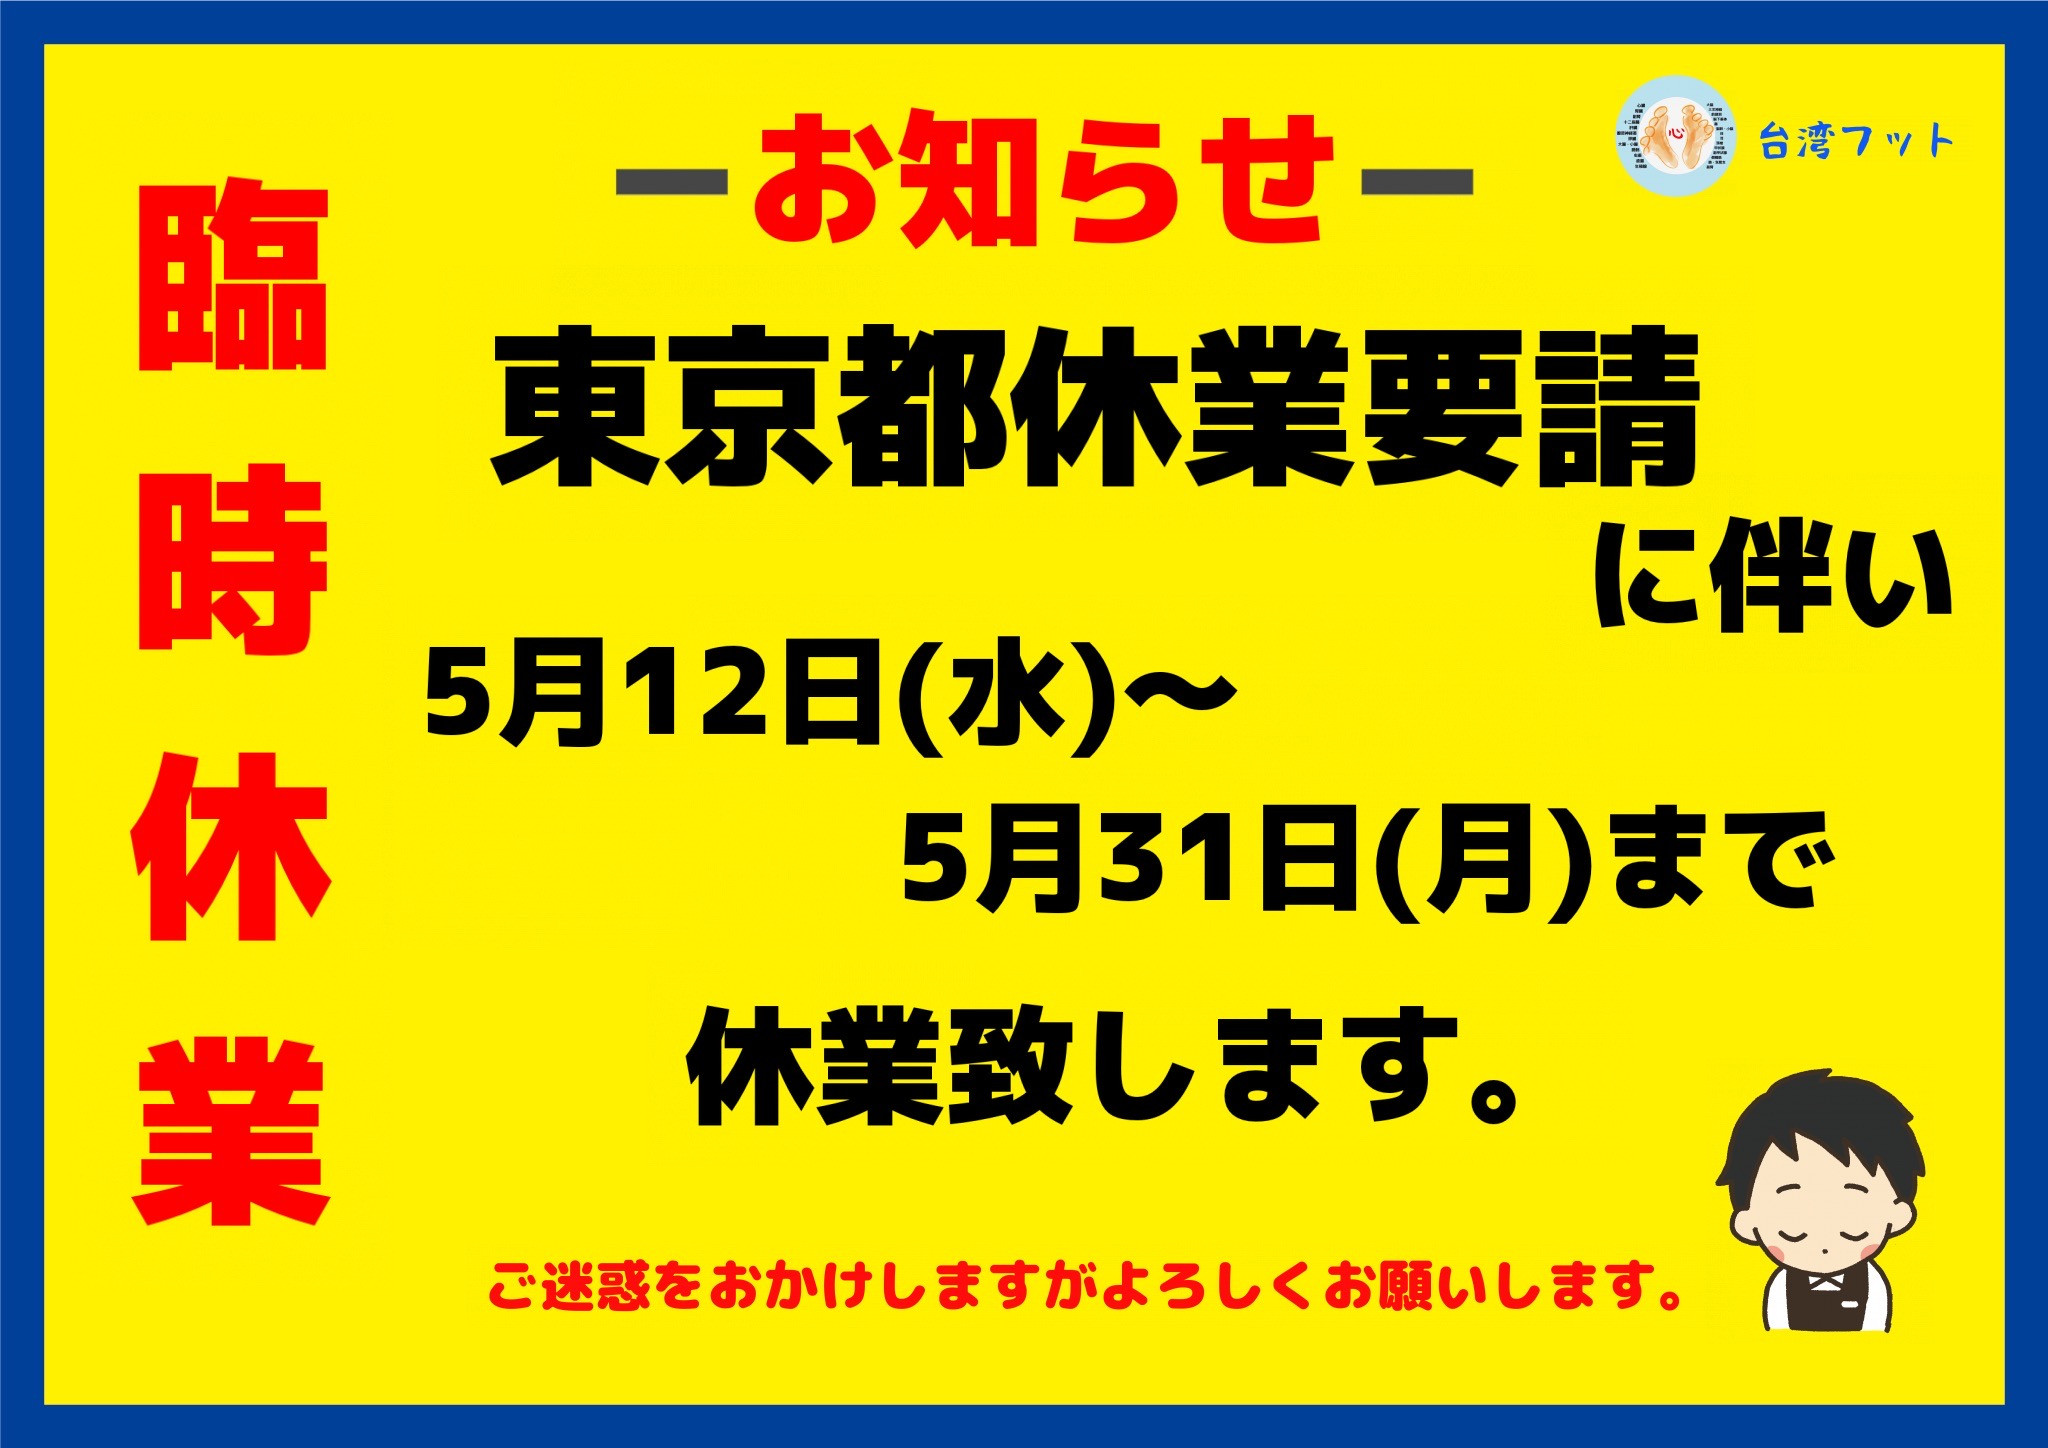 東京都休業要請に伴い、5月12日(水)〜5月31日(月)まで休業致します。